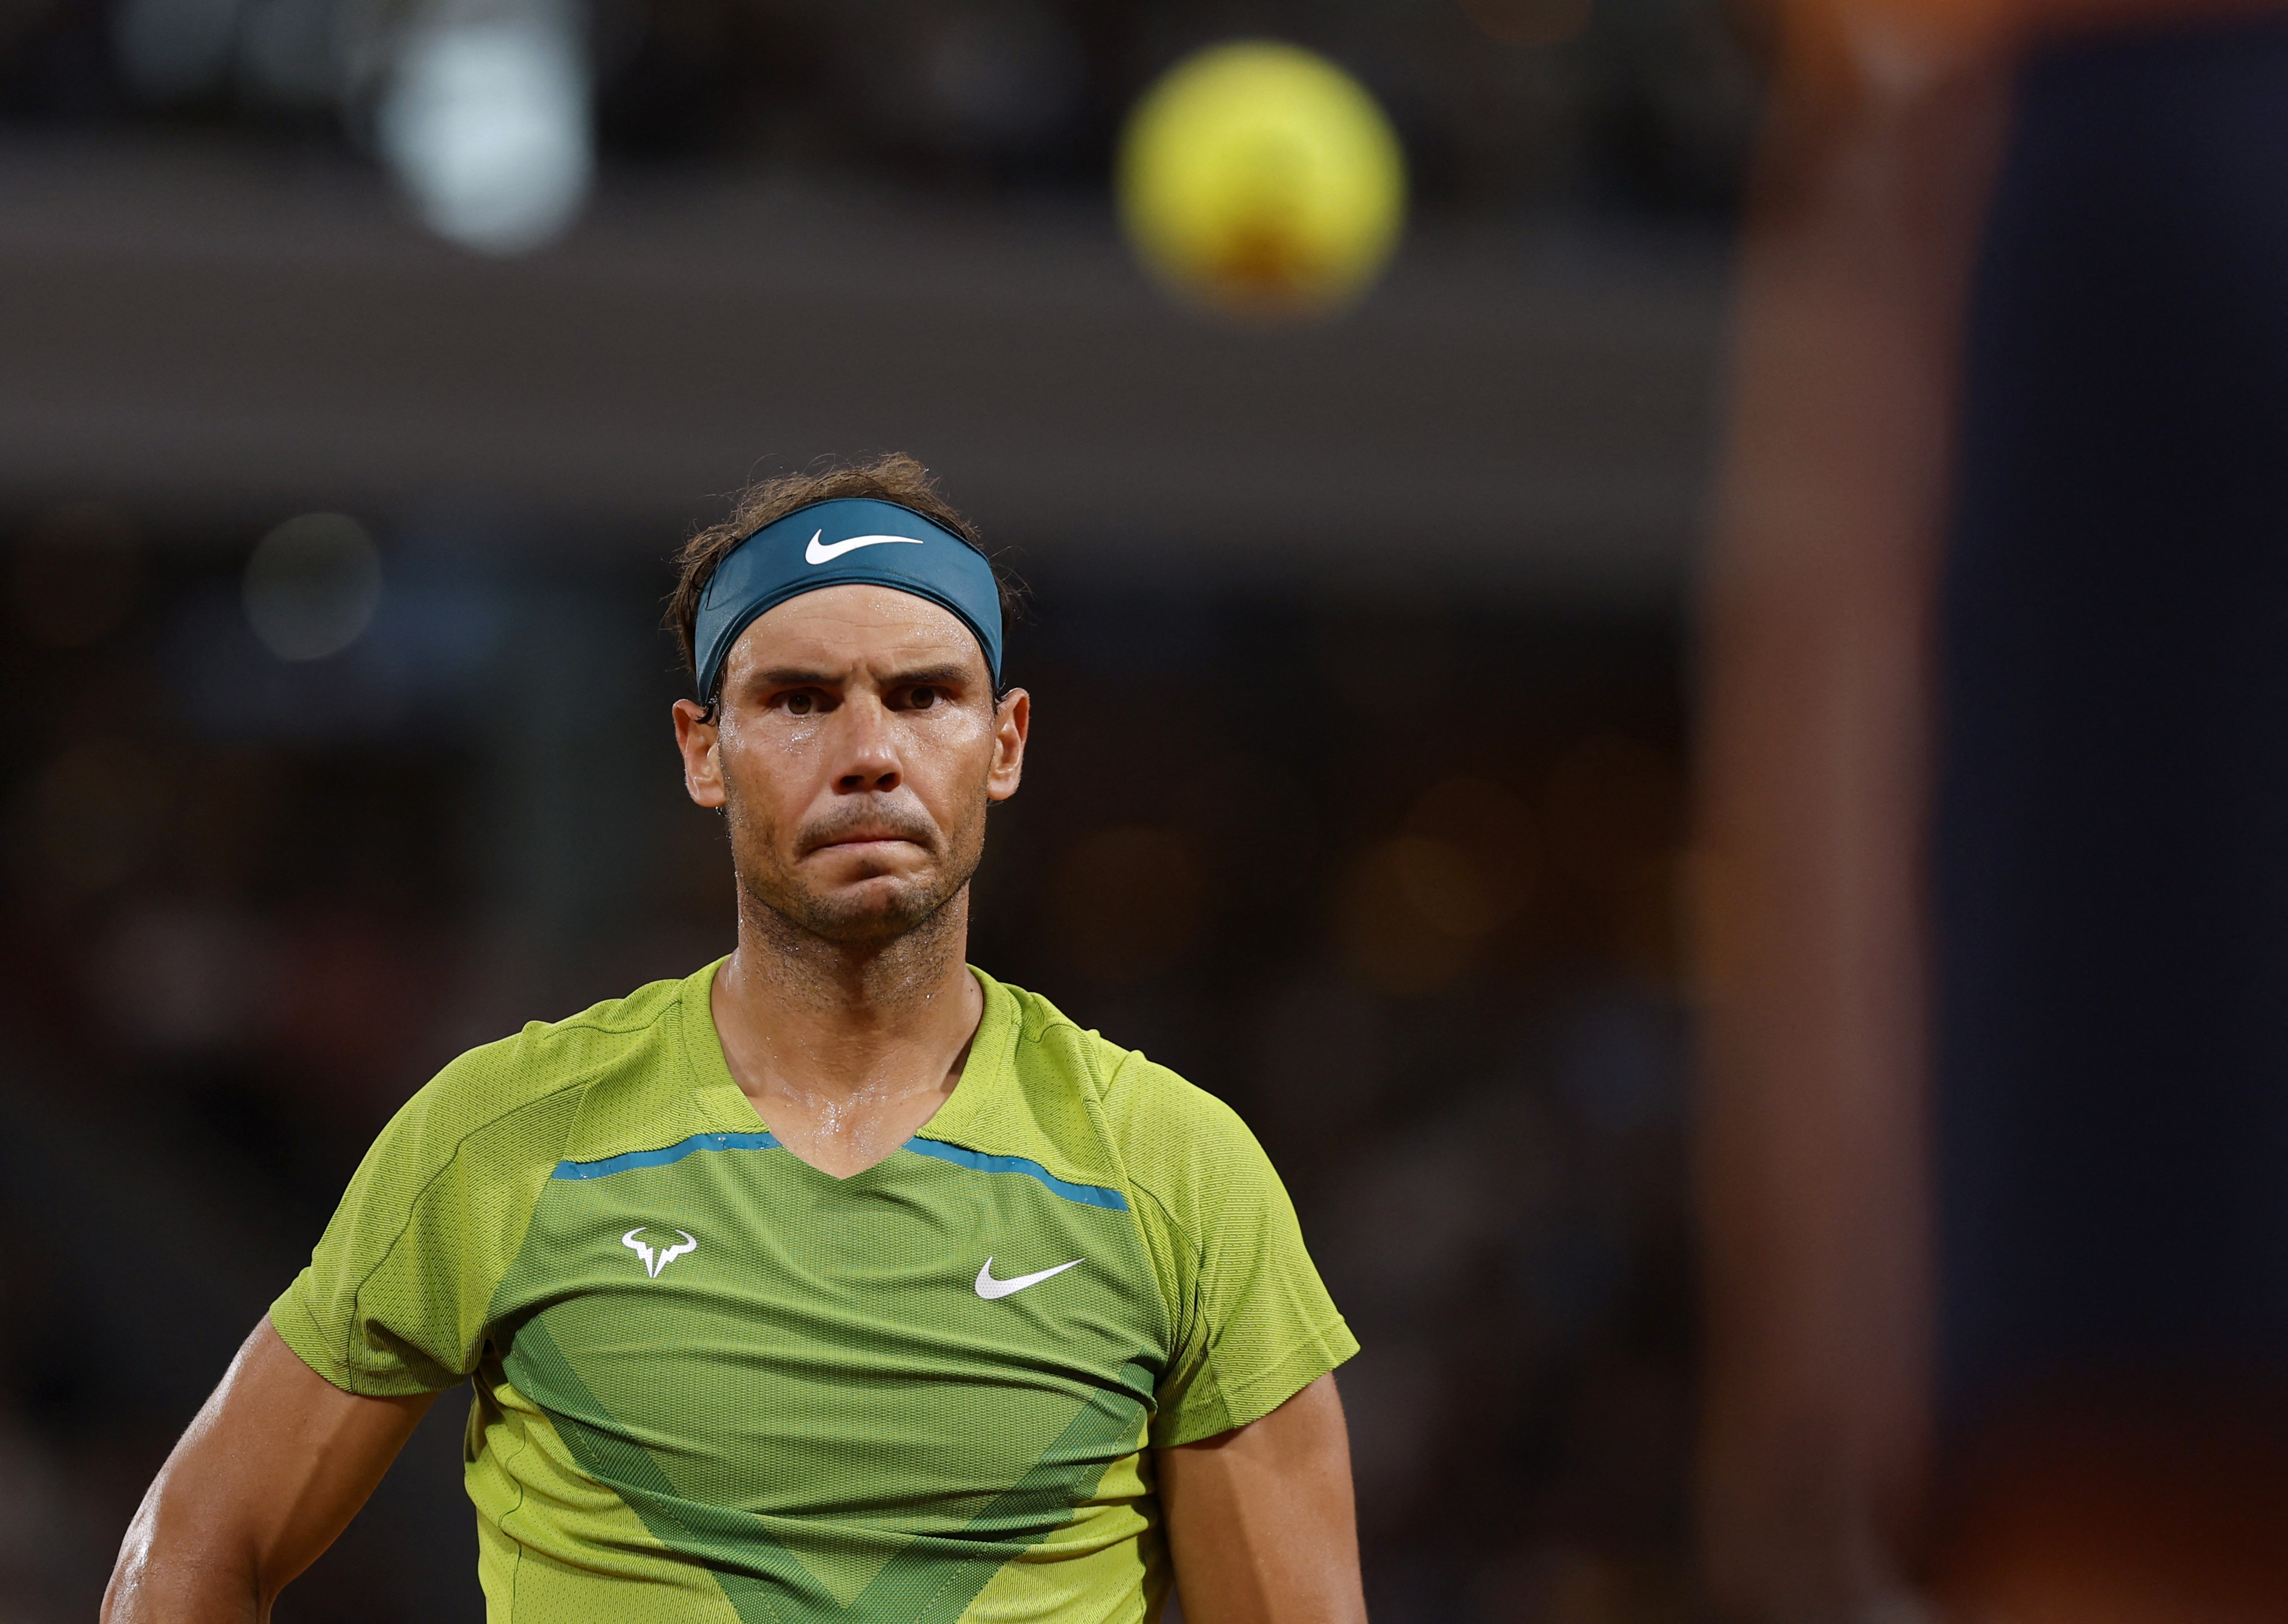 Tras clasificarse a la final, Rafael Nadal lanzó una reflexión sobre su dolorosa lesión: “Preferiría perder y tener un pie nuevo”